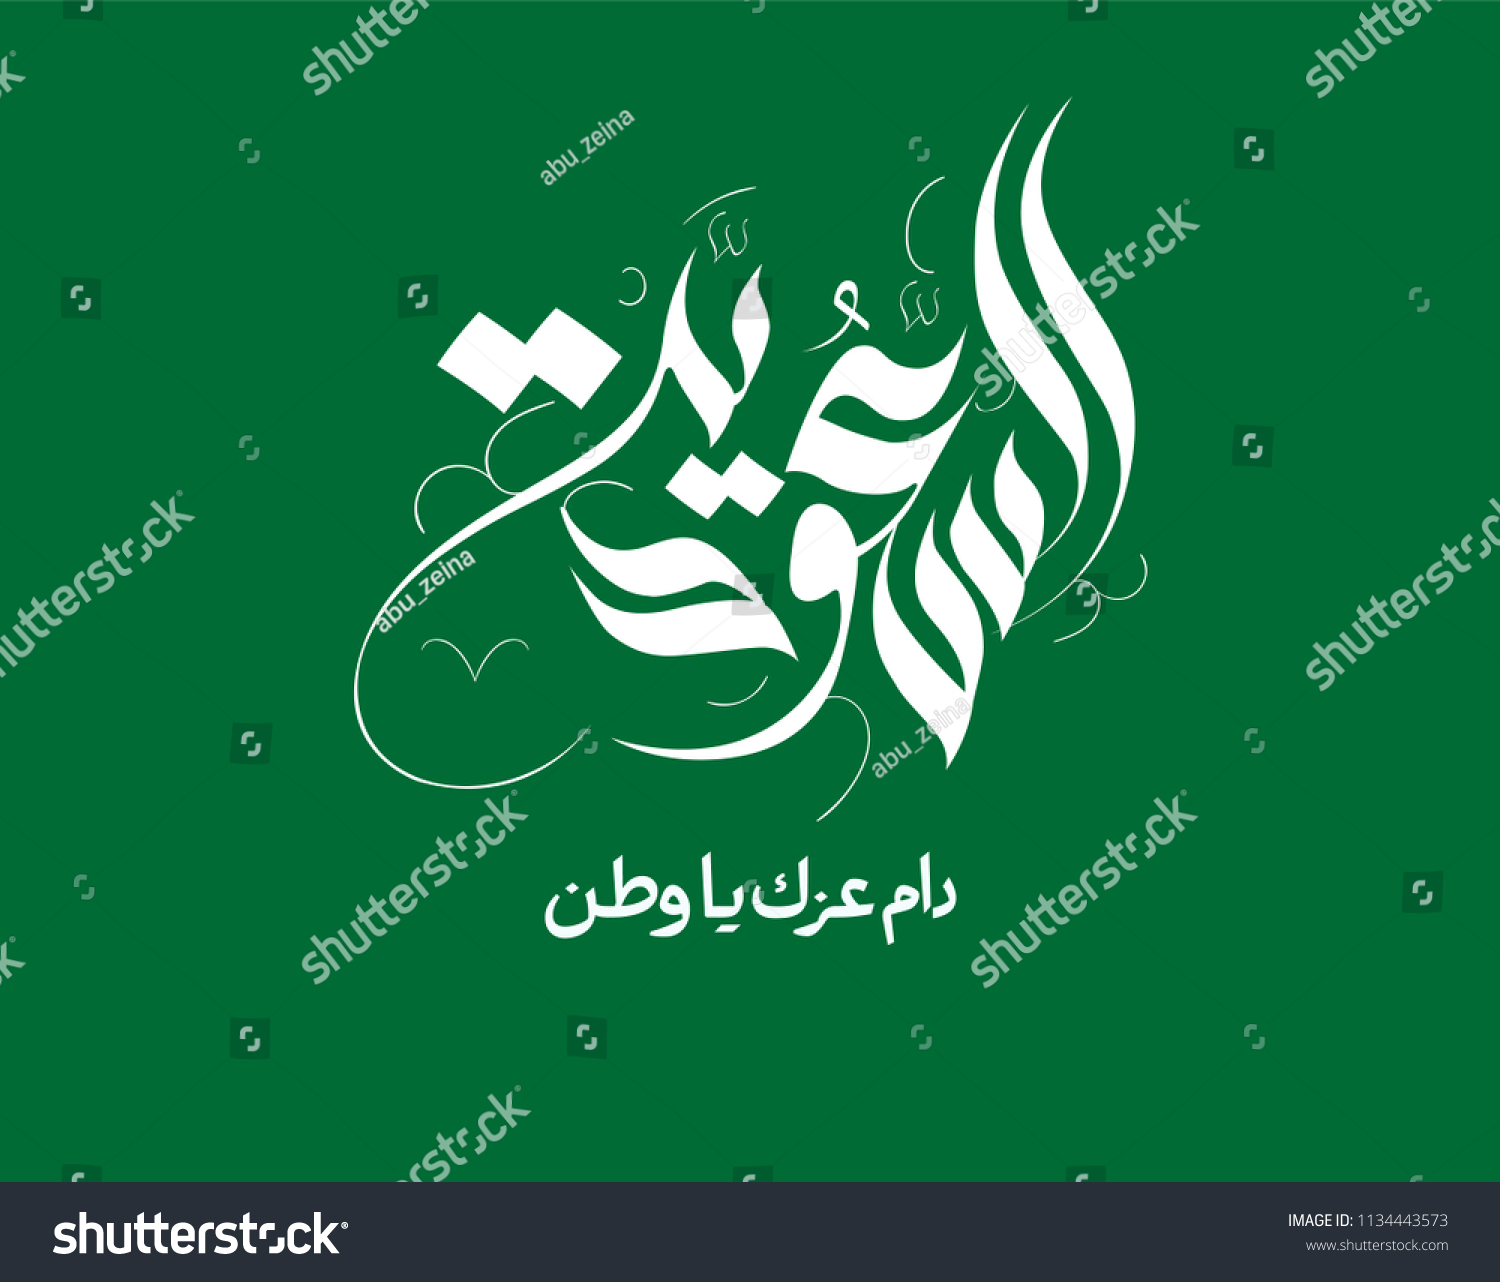 サウジアラビア王国の国の日 Ksa国民の日のアラビア語の手書きの自由書 のベクター画像素材 ロイヤリティフリー